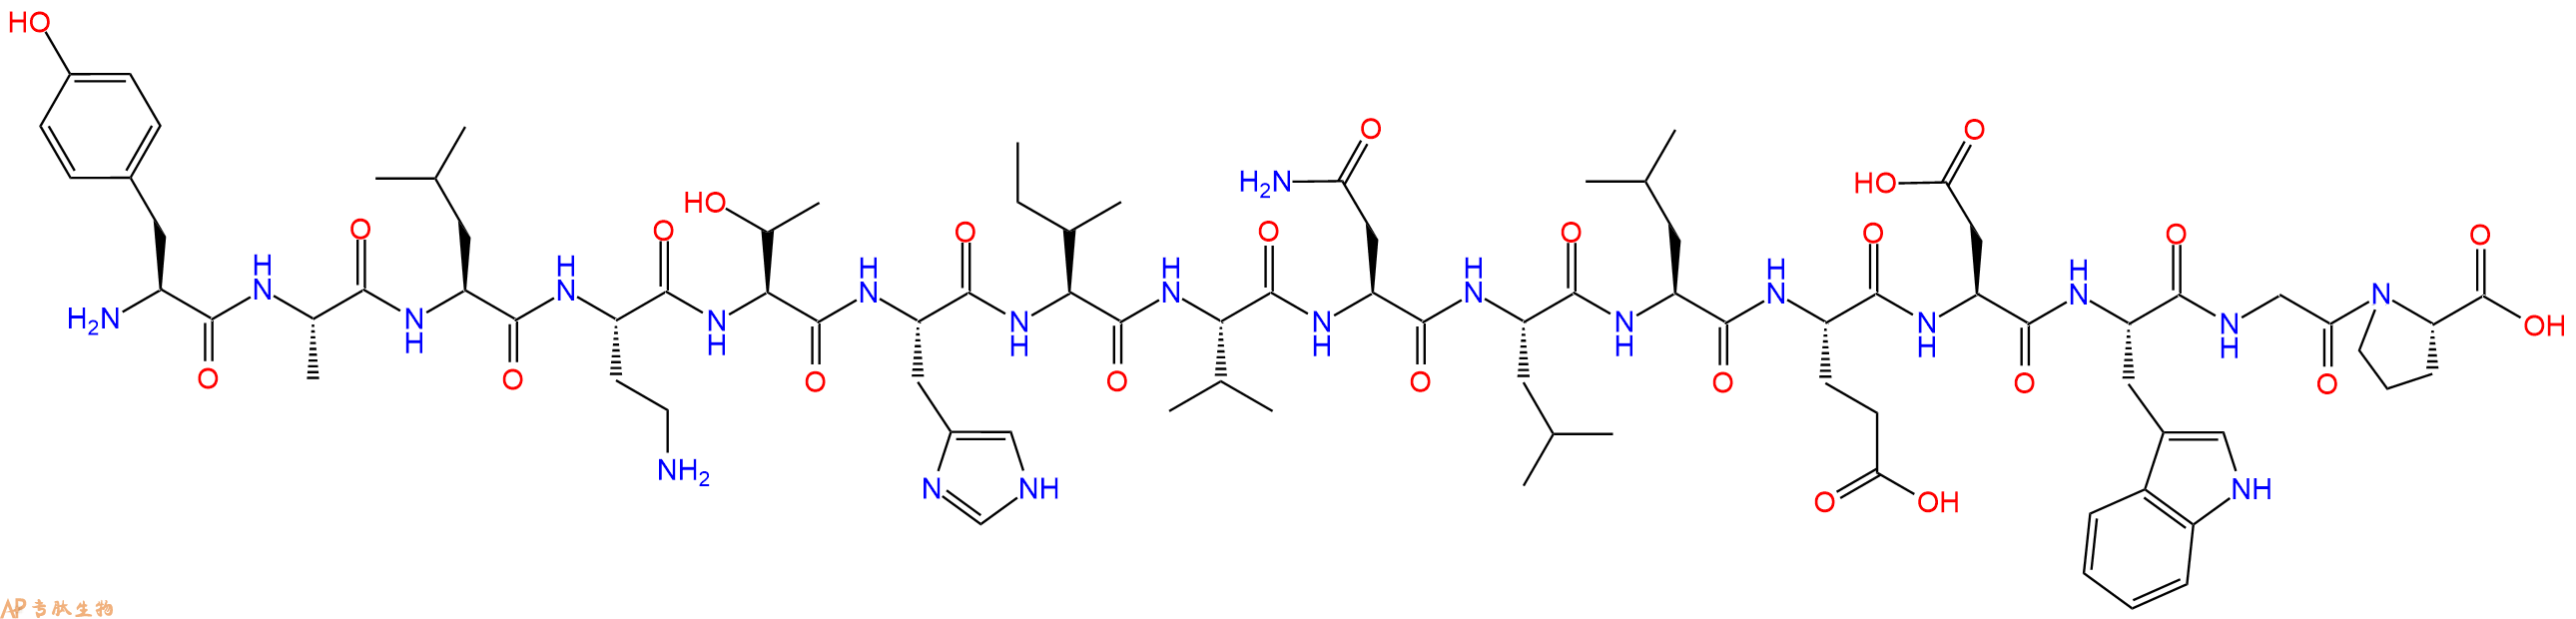 专肽生物产品H2N-Tyr-Ala-Leu-Dab-Thr-His-Ile-Val-Asn-Leu-Leu-Gl